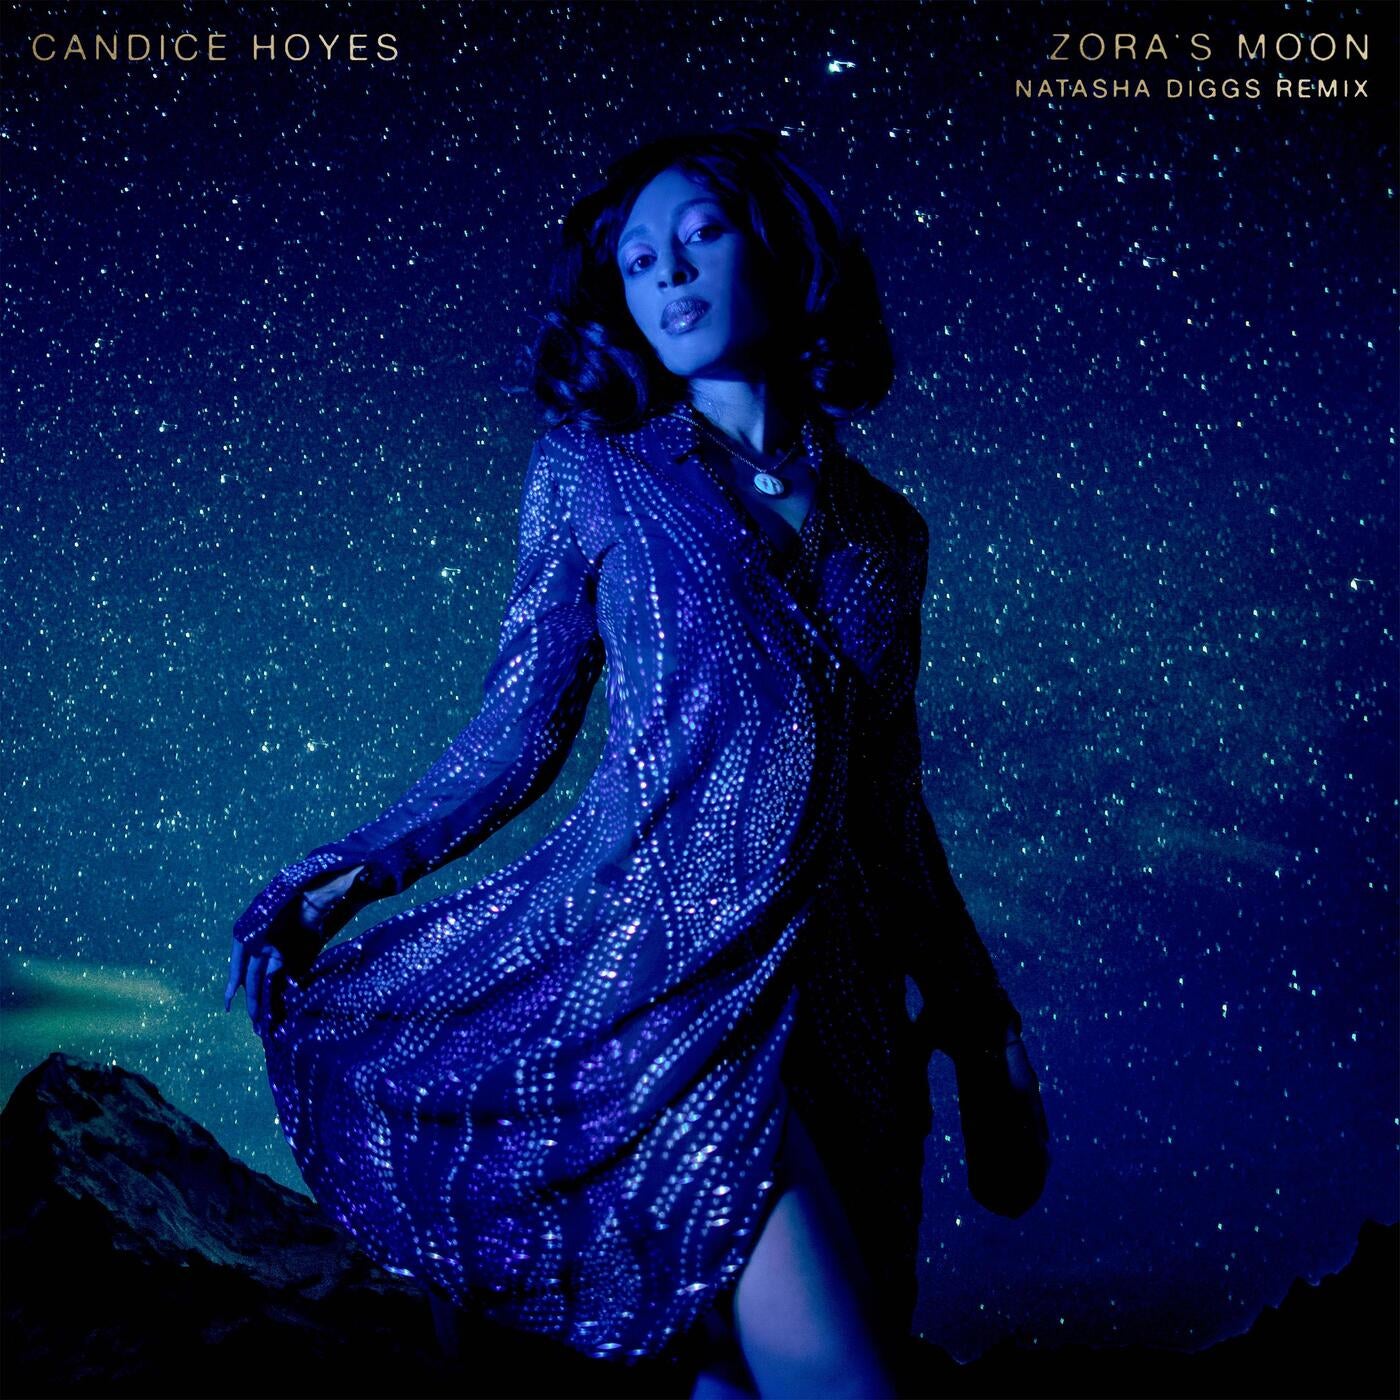 Zora's Moon (Natasha Diggs Remix)